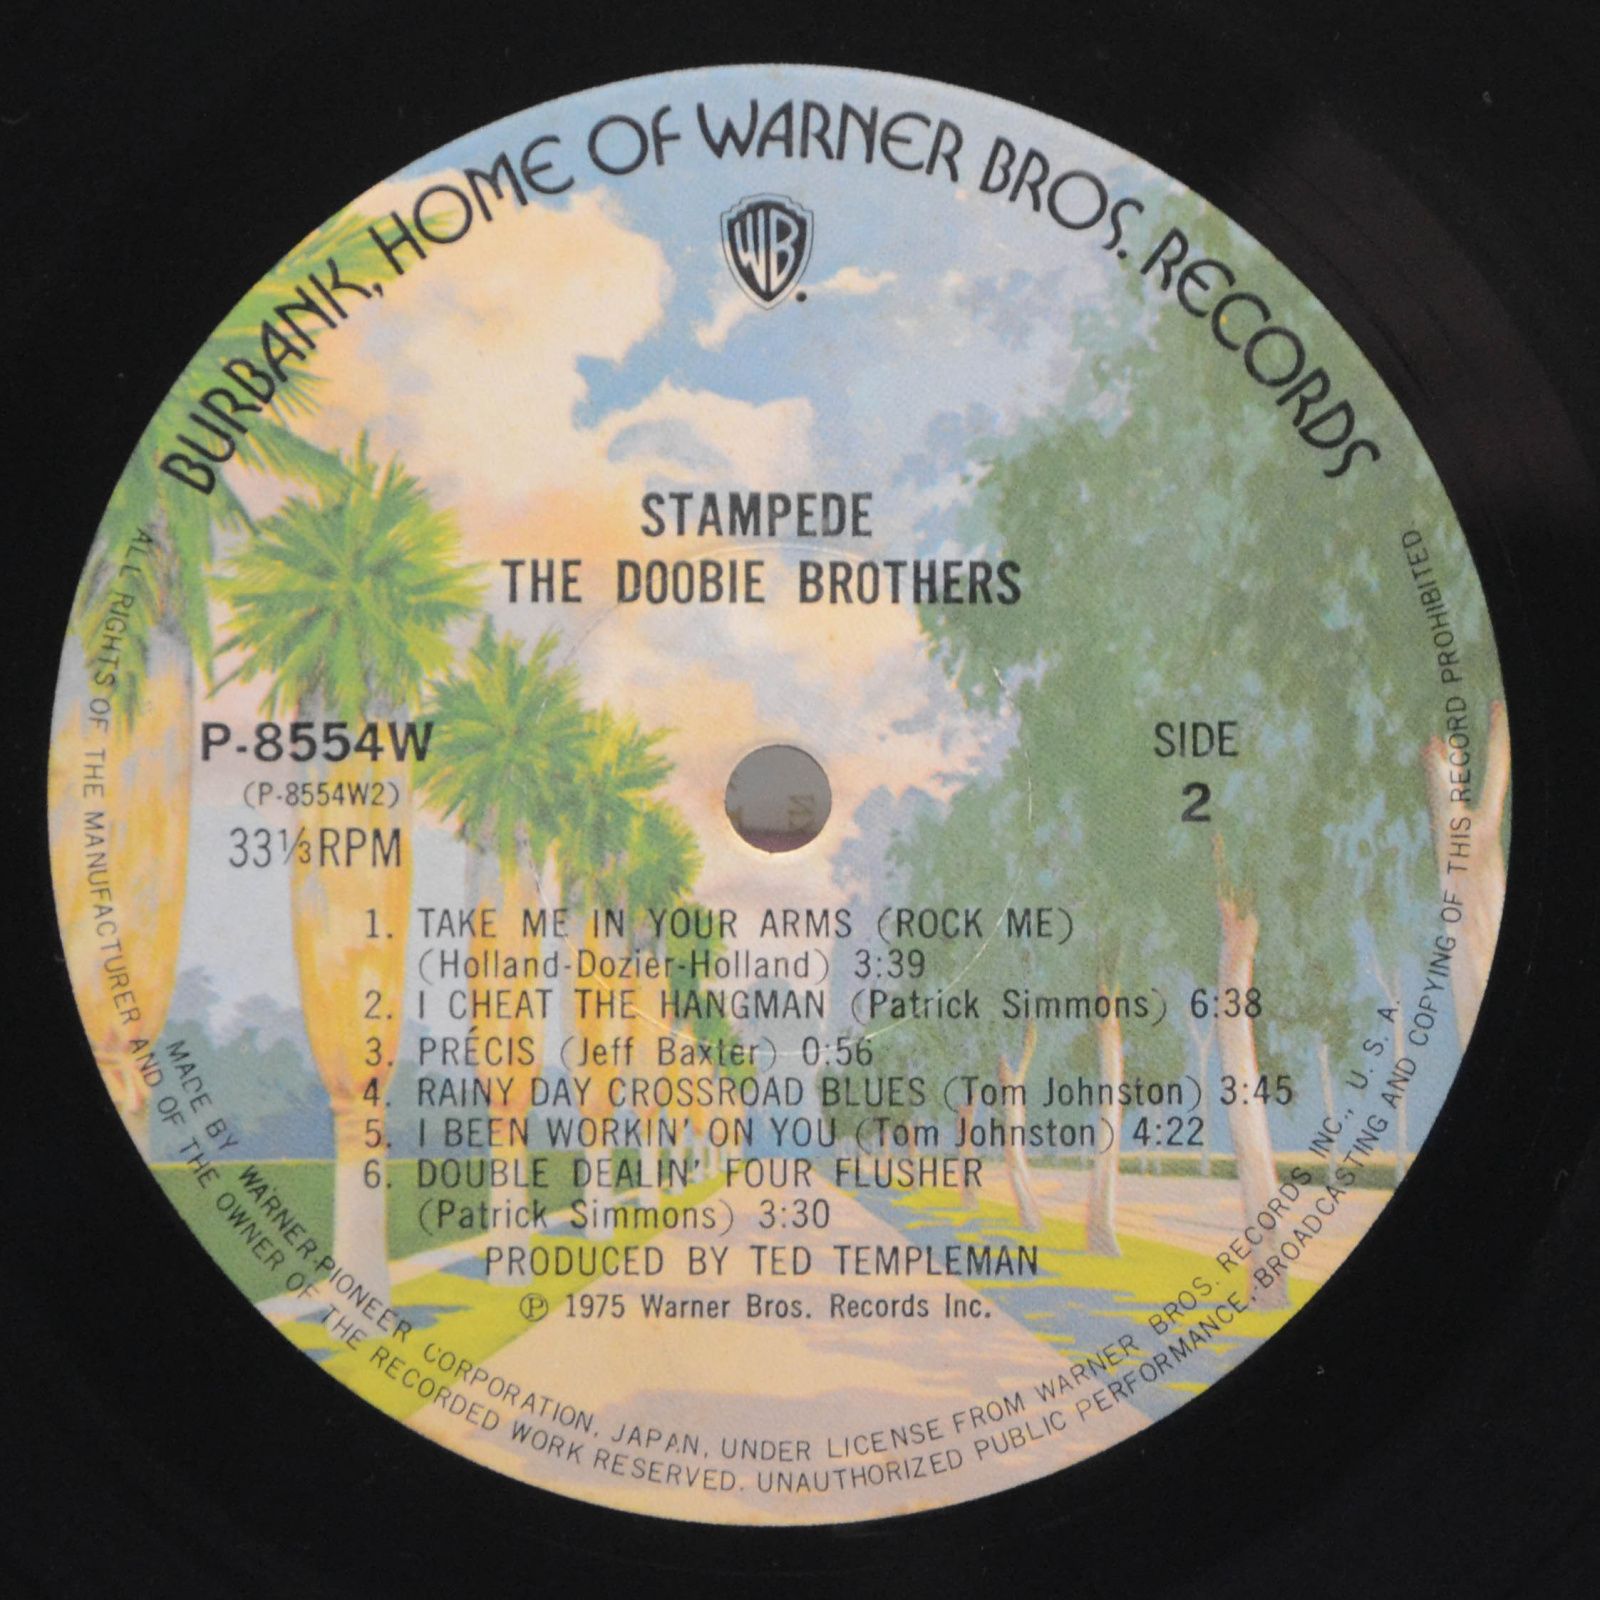 Doobie Brothers — Stampede, 1975